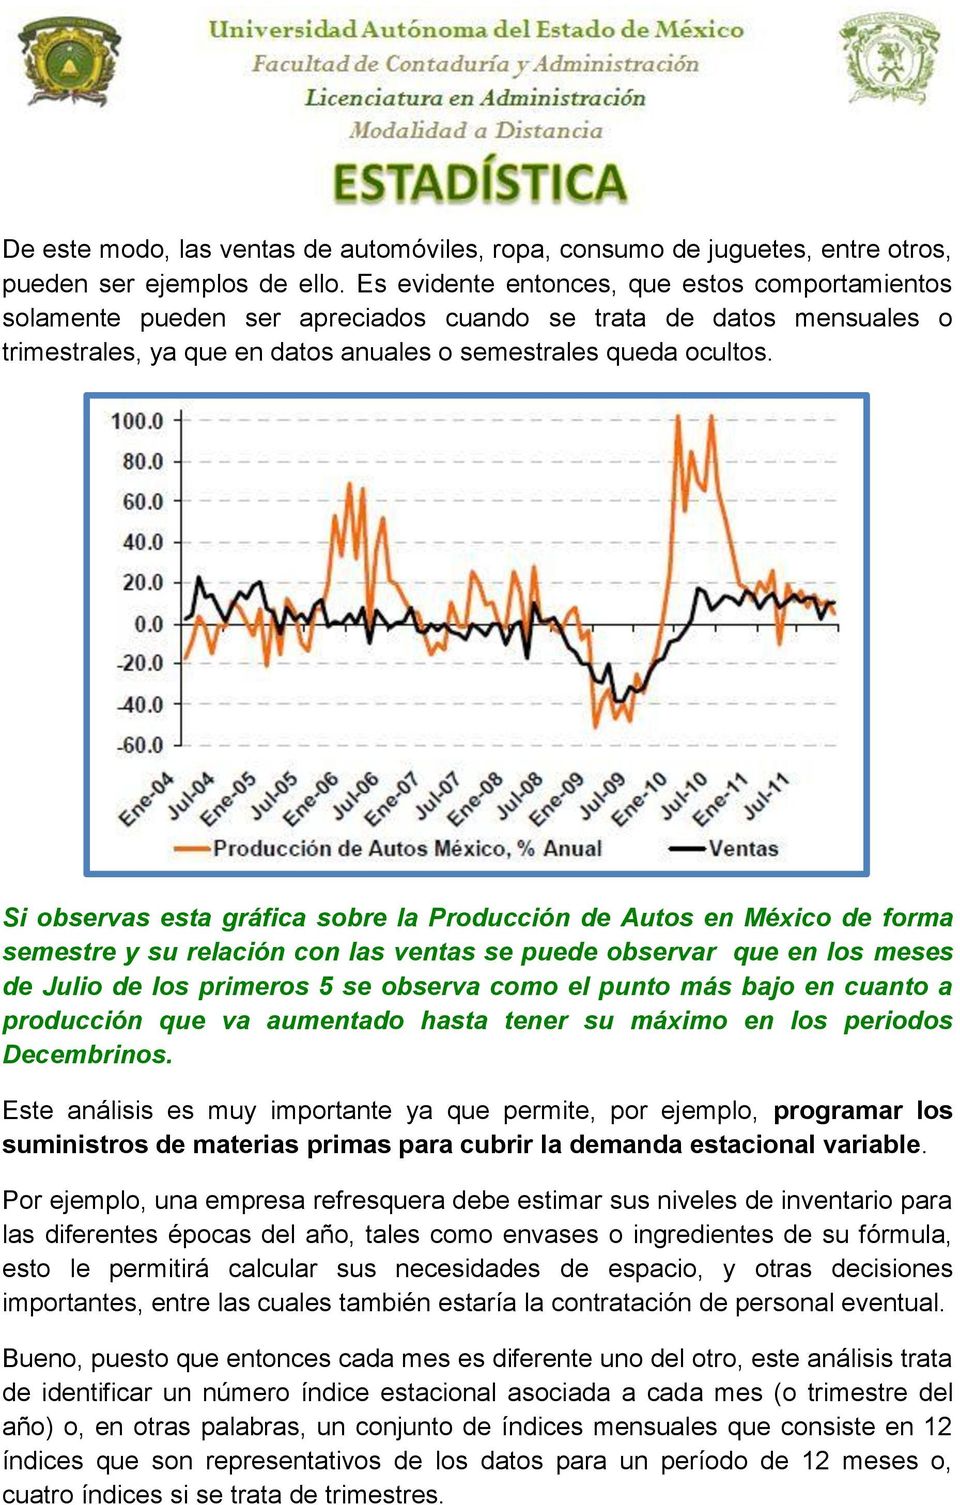 Si observas esta gráfica sobre la Producción de Autos en México de forma semestre y su relación con las ventas se puede observar que en los meses de Julio de los primeros 5 se observa como el punto